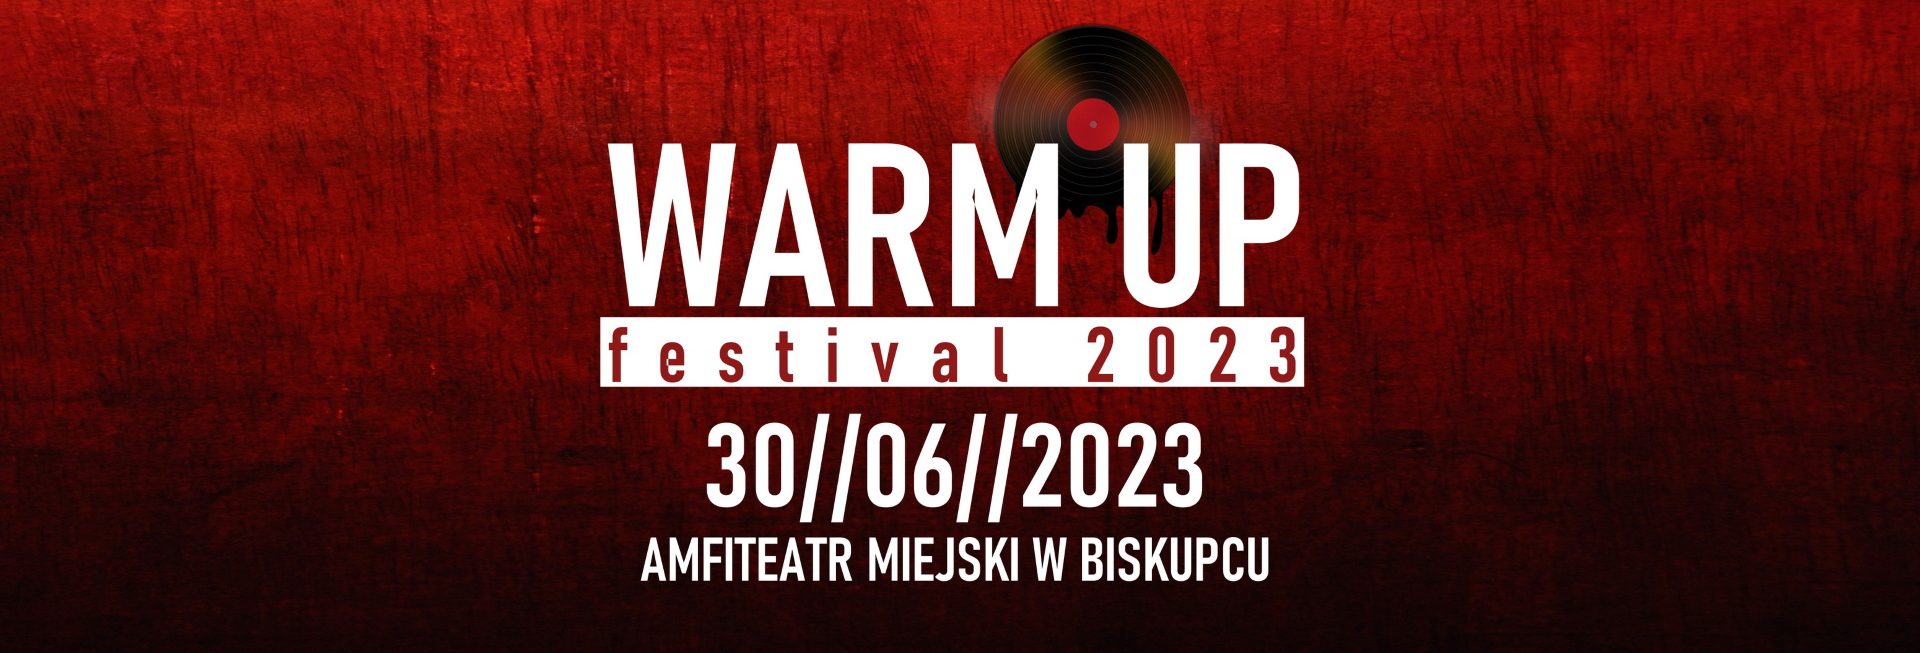 Plakat zapraszający w piątek 30 czerwca 2023 r. do Biskupca na kolejną edycję Warm Up Festival Biskupiec 2023. 